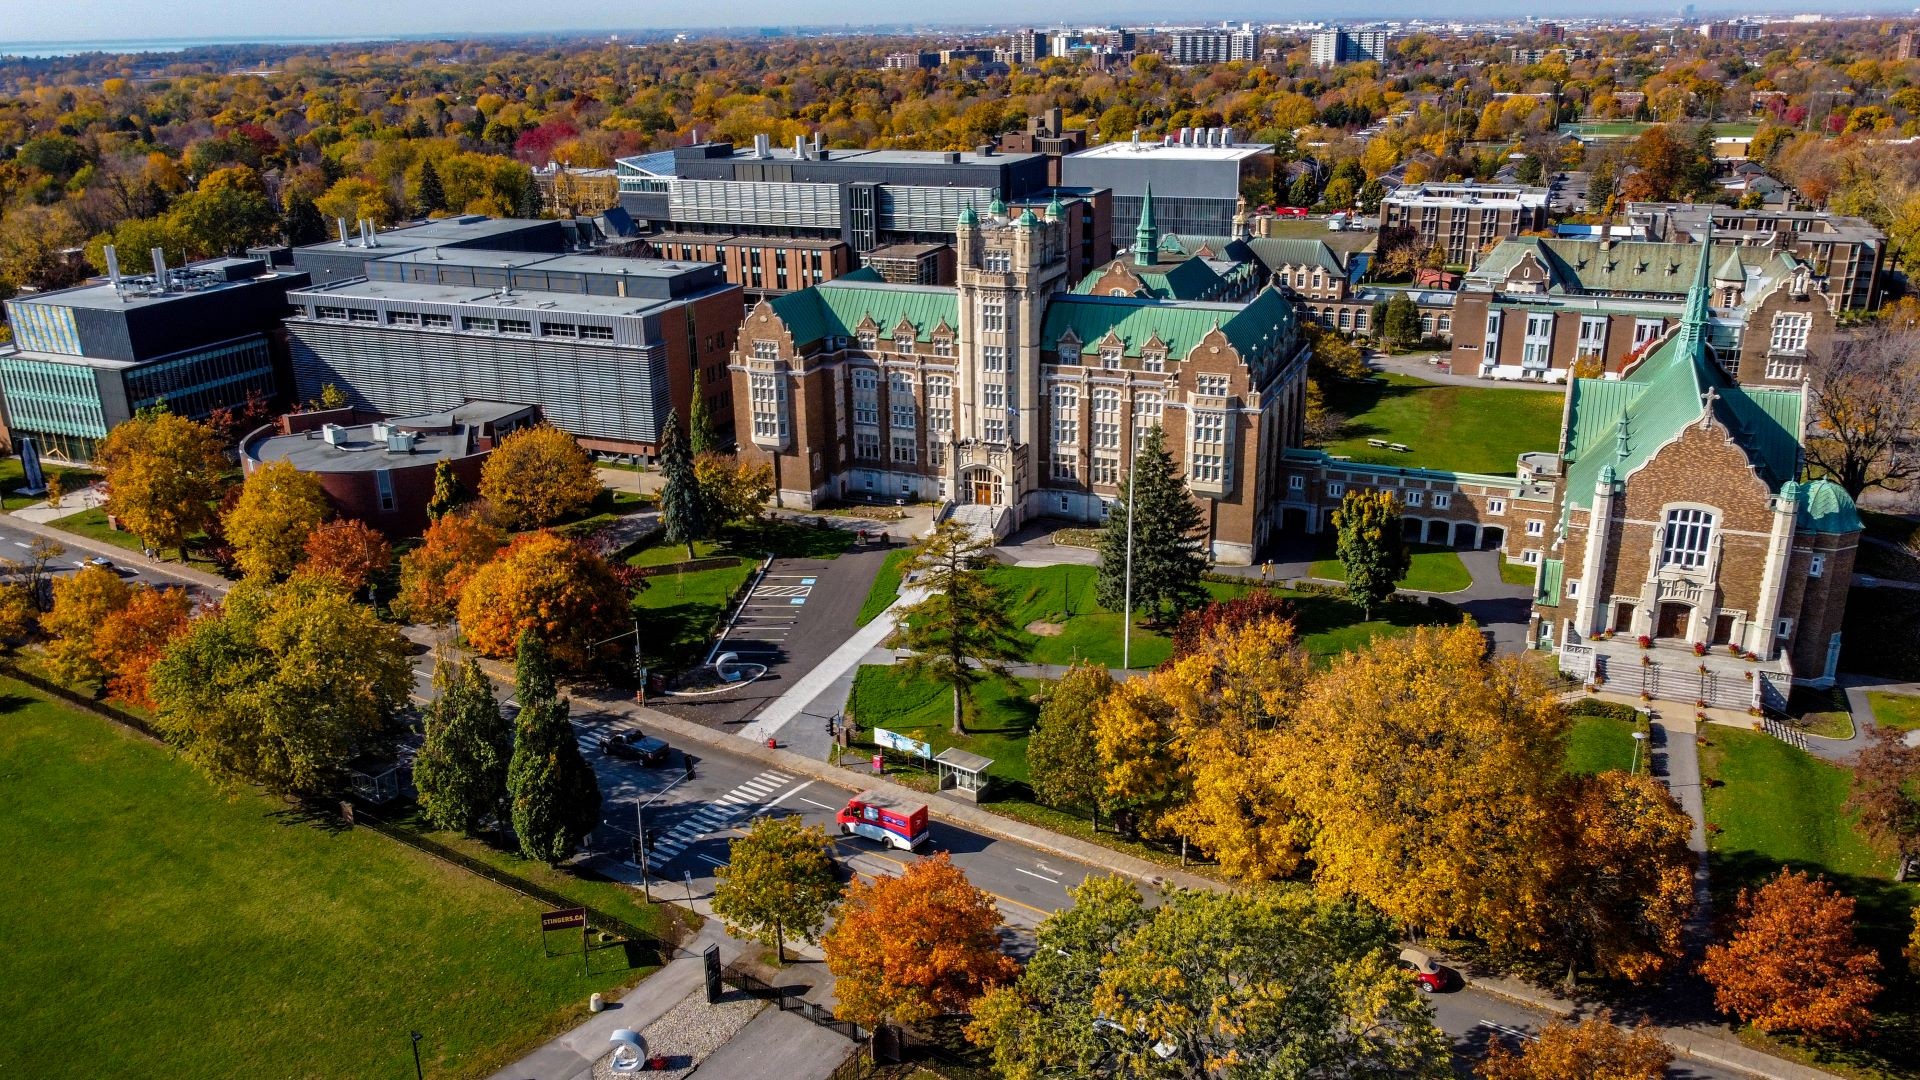 Vue aérienne d'un campus universitaire mêlant bâtiments modernes et historiques au milieu d'un feuillage d'automne.